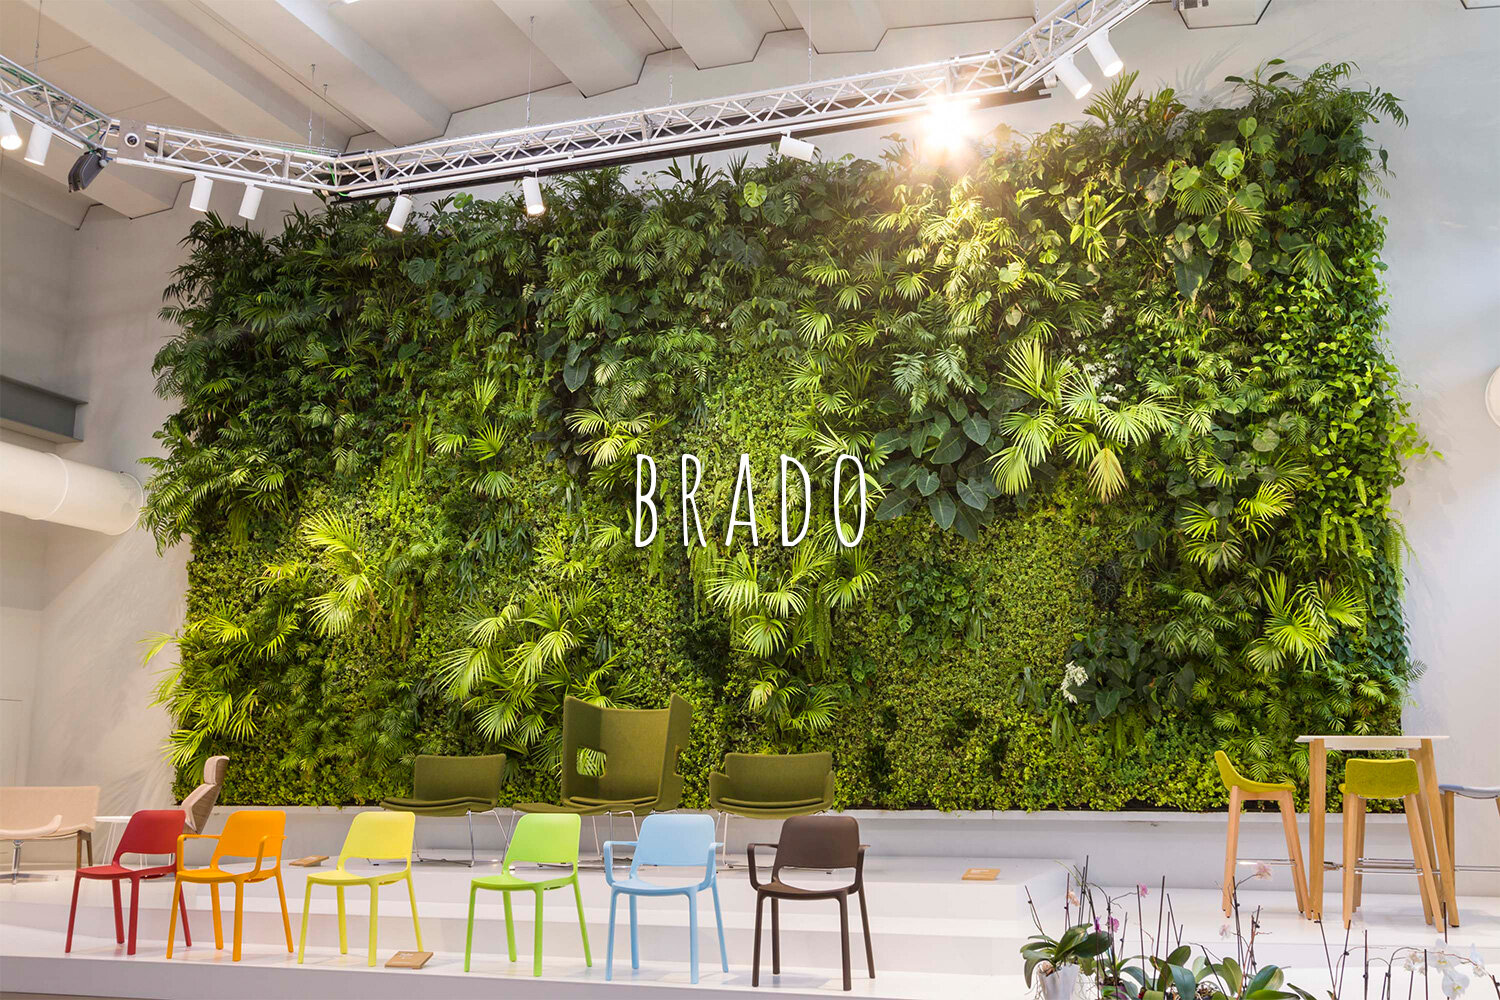 Living Wall, Vertical Garden, Green Wall, Indoor, Non-residential, Brado, Treviso